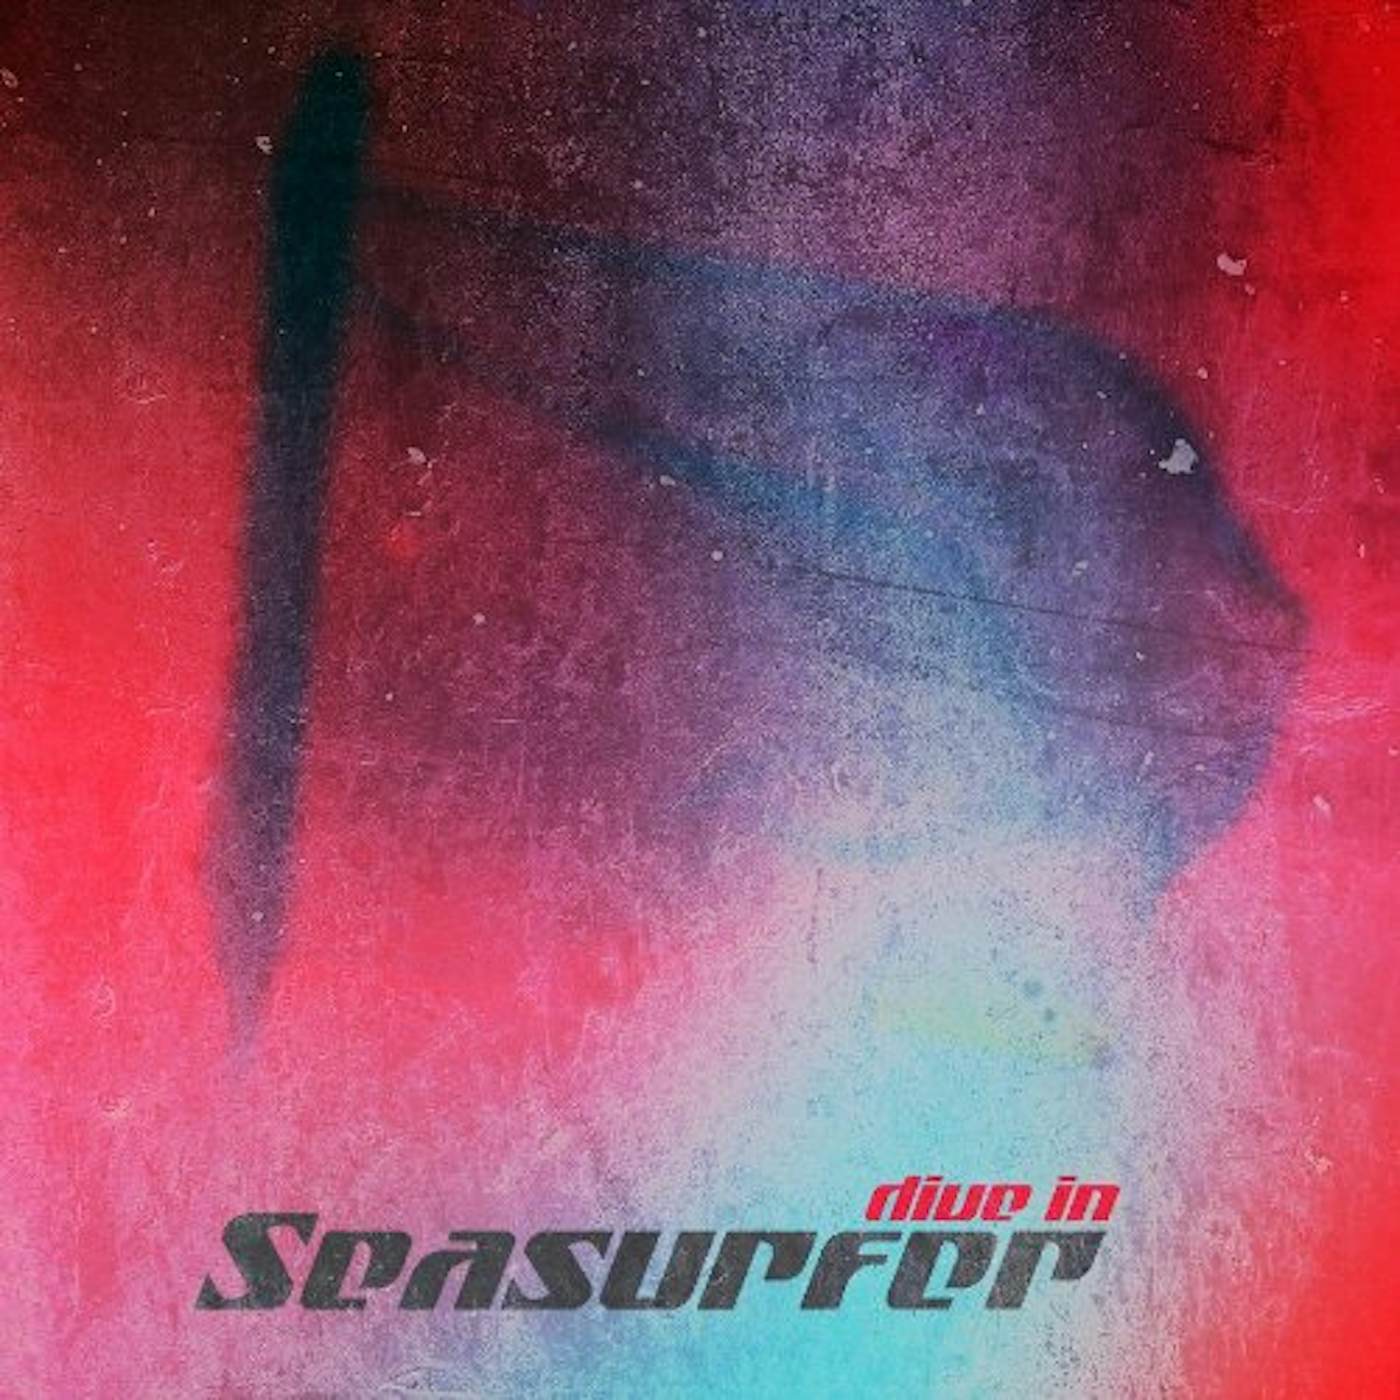 Seasurfer Dive In Vinyl Record